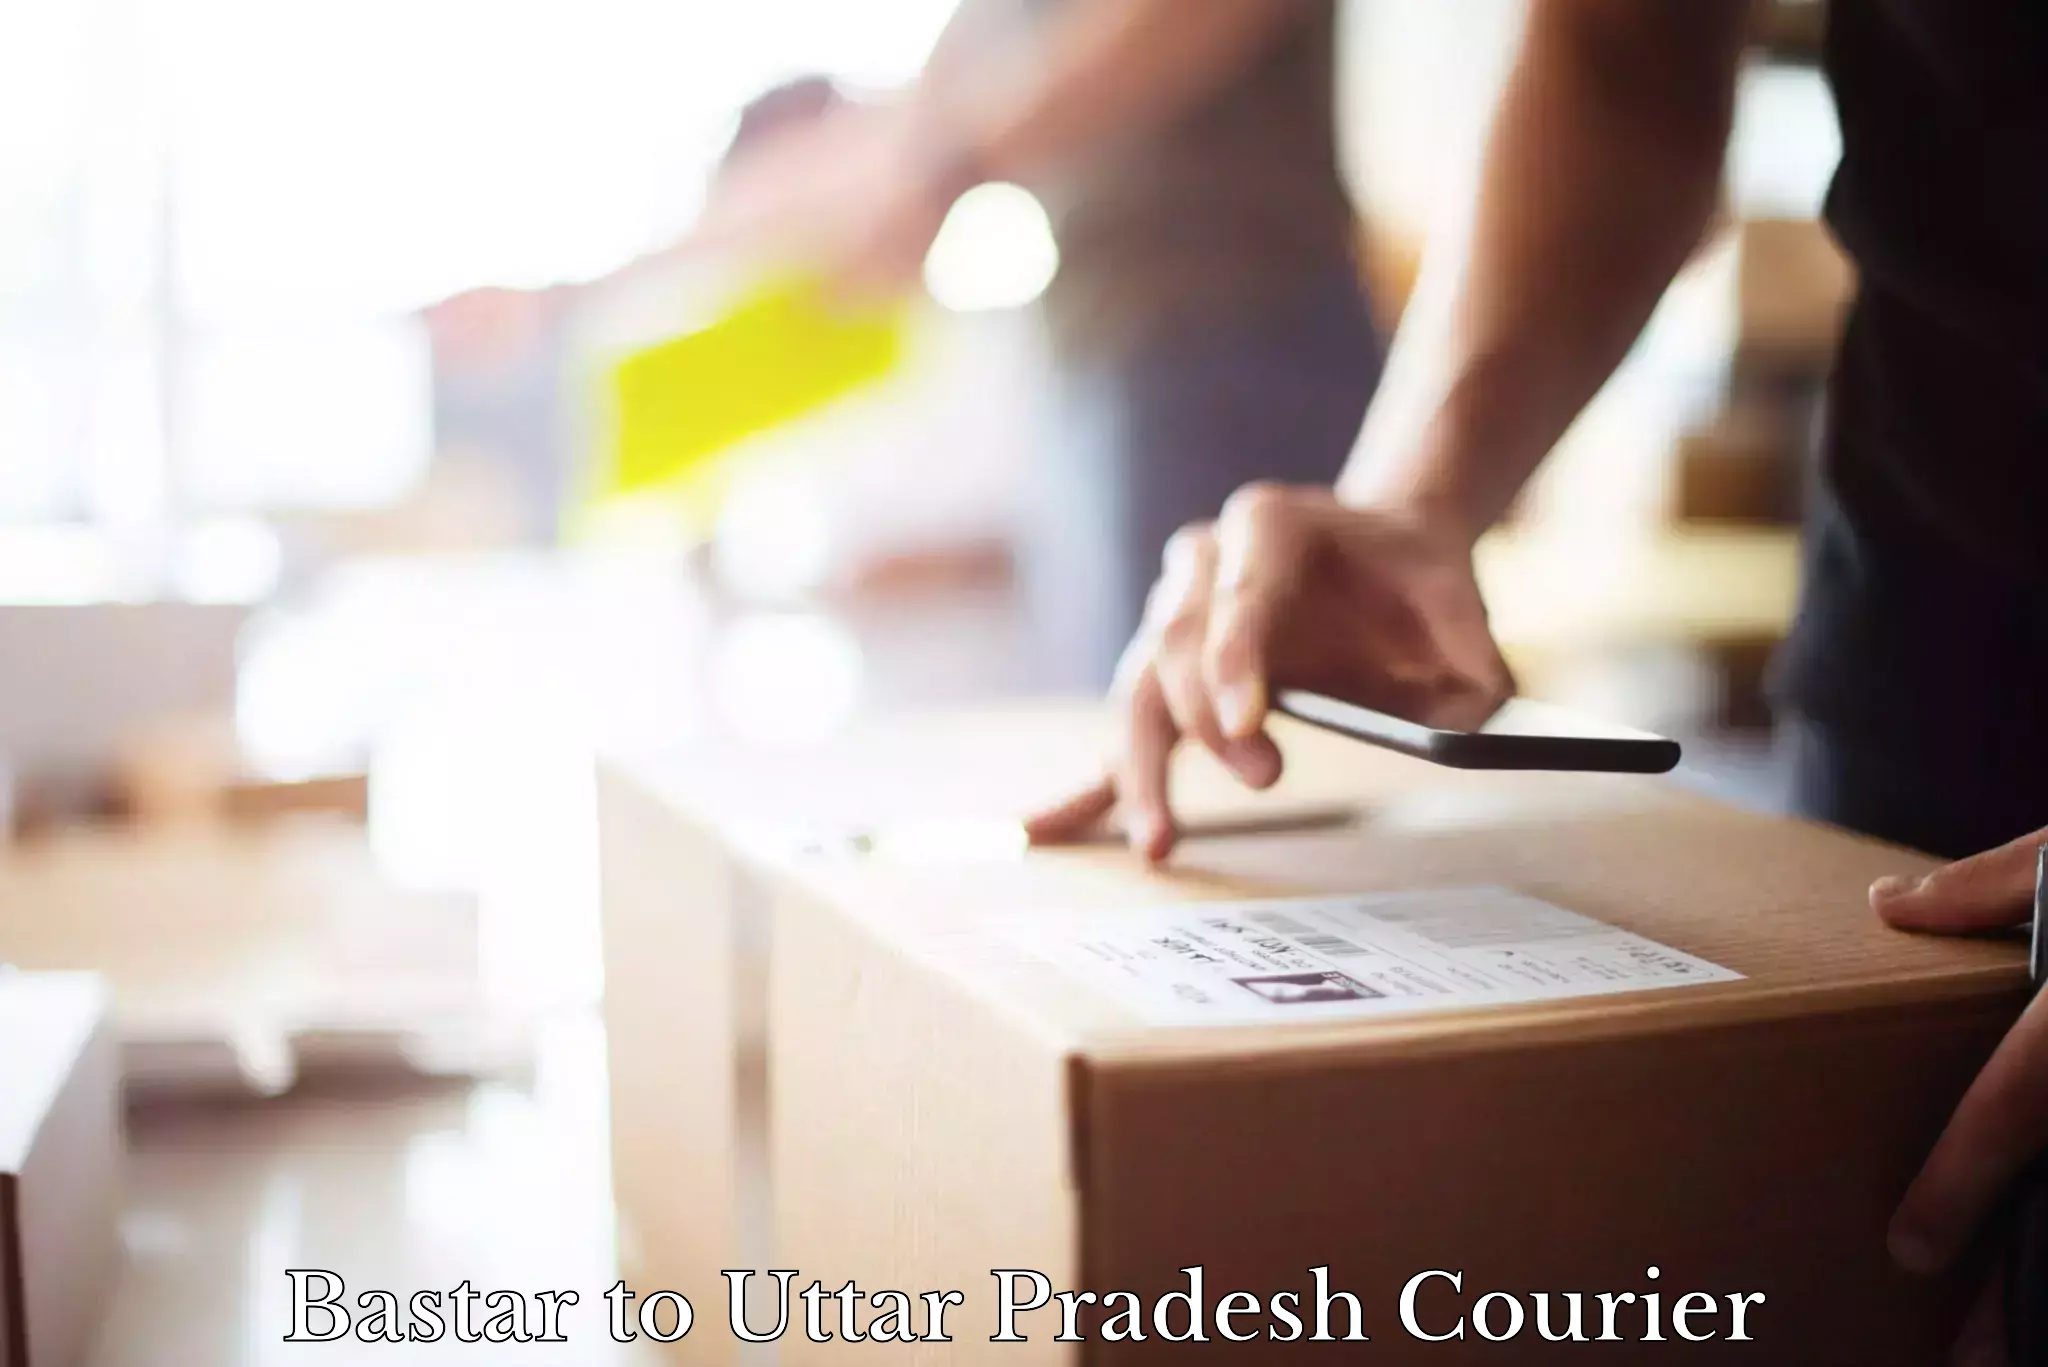 Courier service innovation Bastar to Varanasi